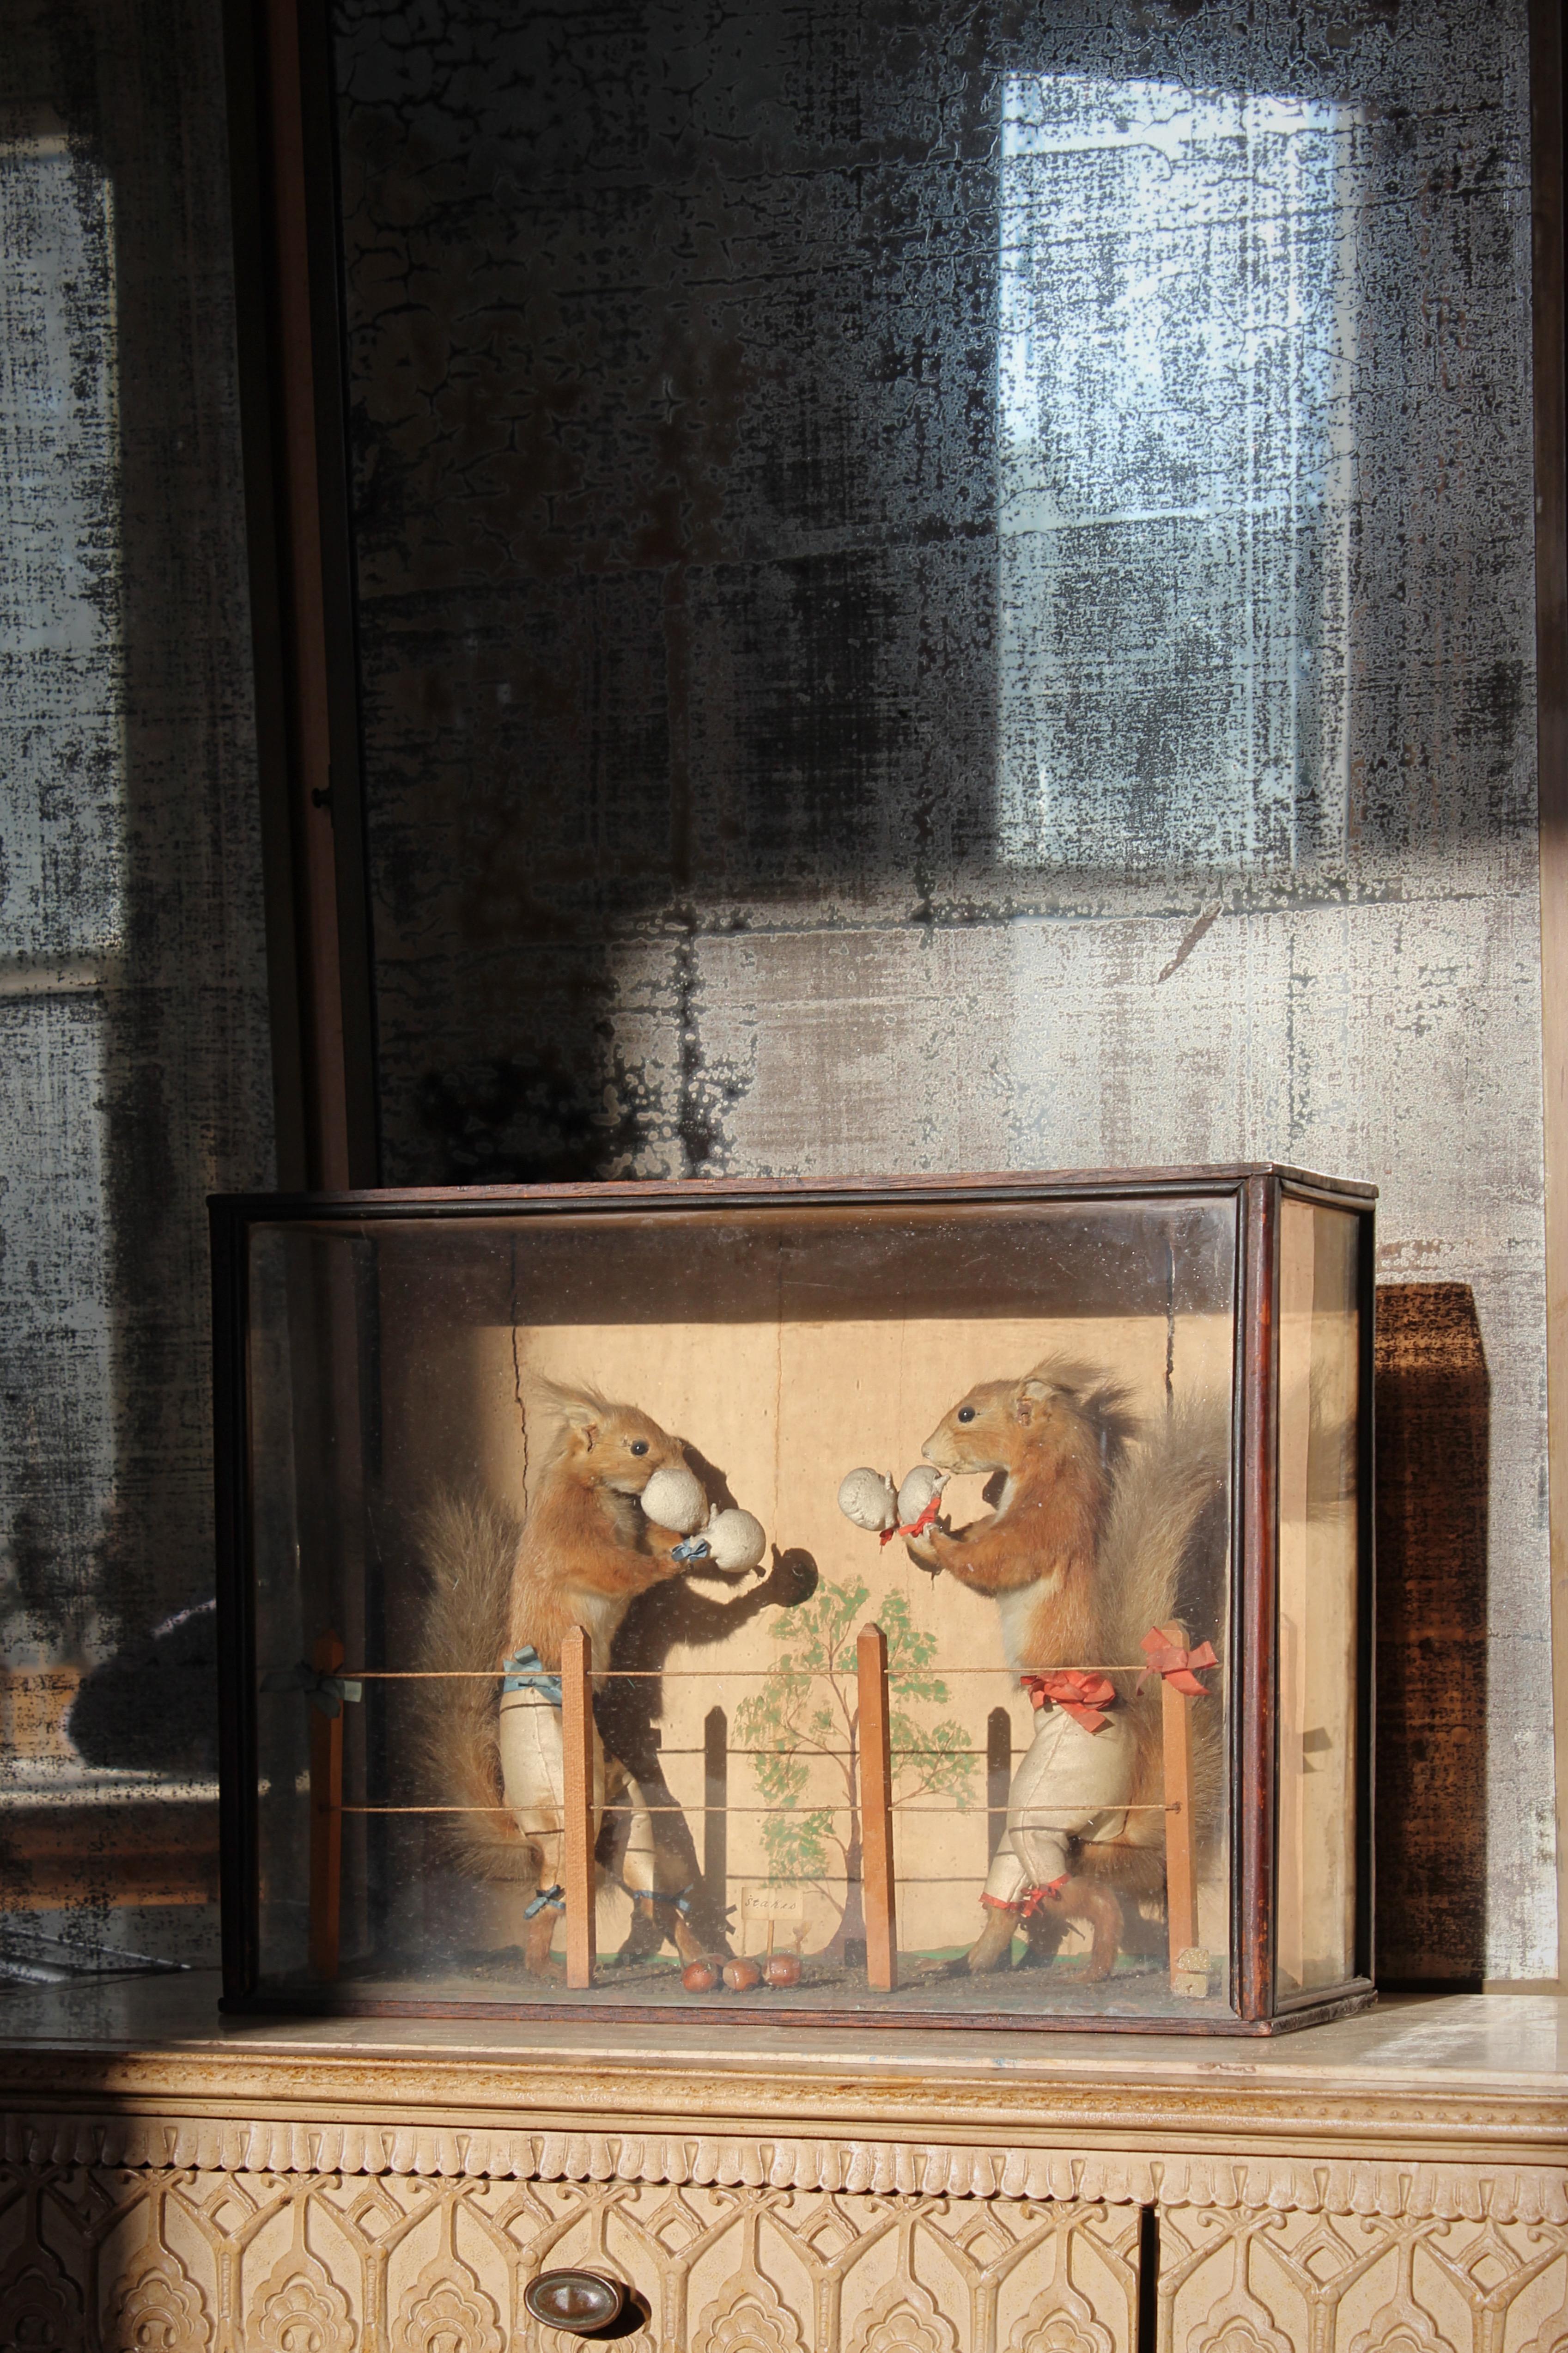 Une très rare scène taxidermique anthropomorphique de deux écureuils rouges en train de boxer, logée dans sa boîte d'origine en pin et vitrée, avec un arrière-plan peint à la main. 

Les écureuils ont leurs petits gants en tissu et leurs culottes